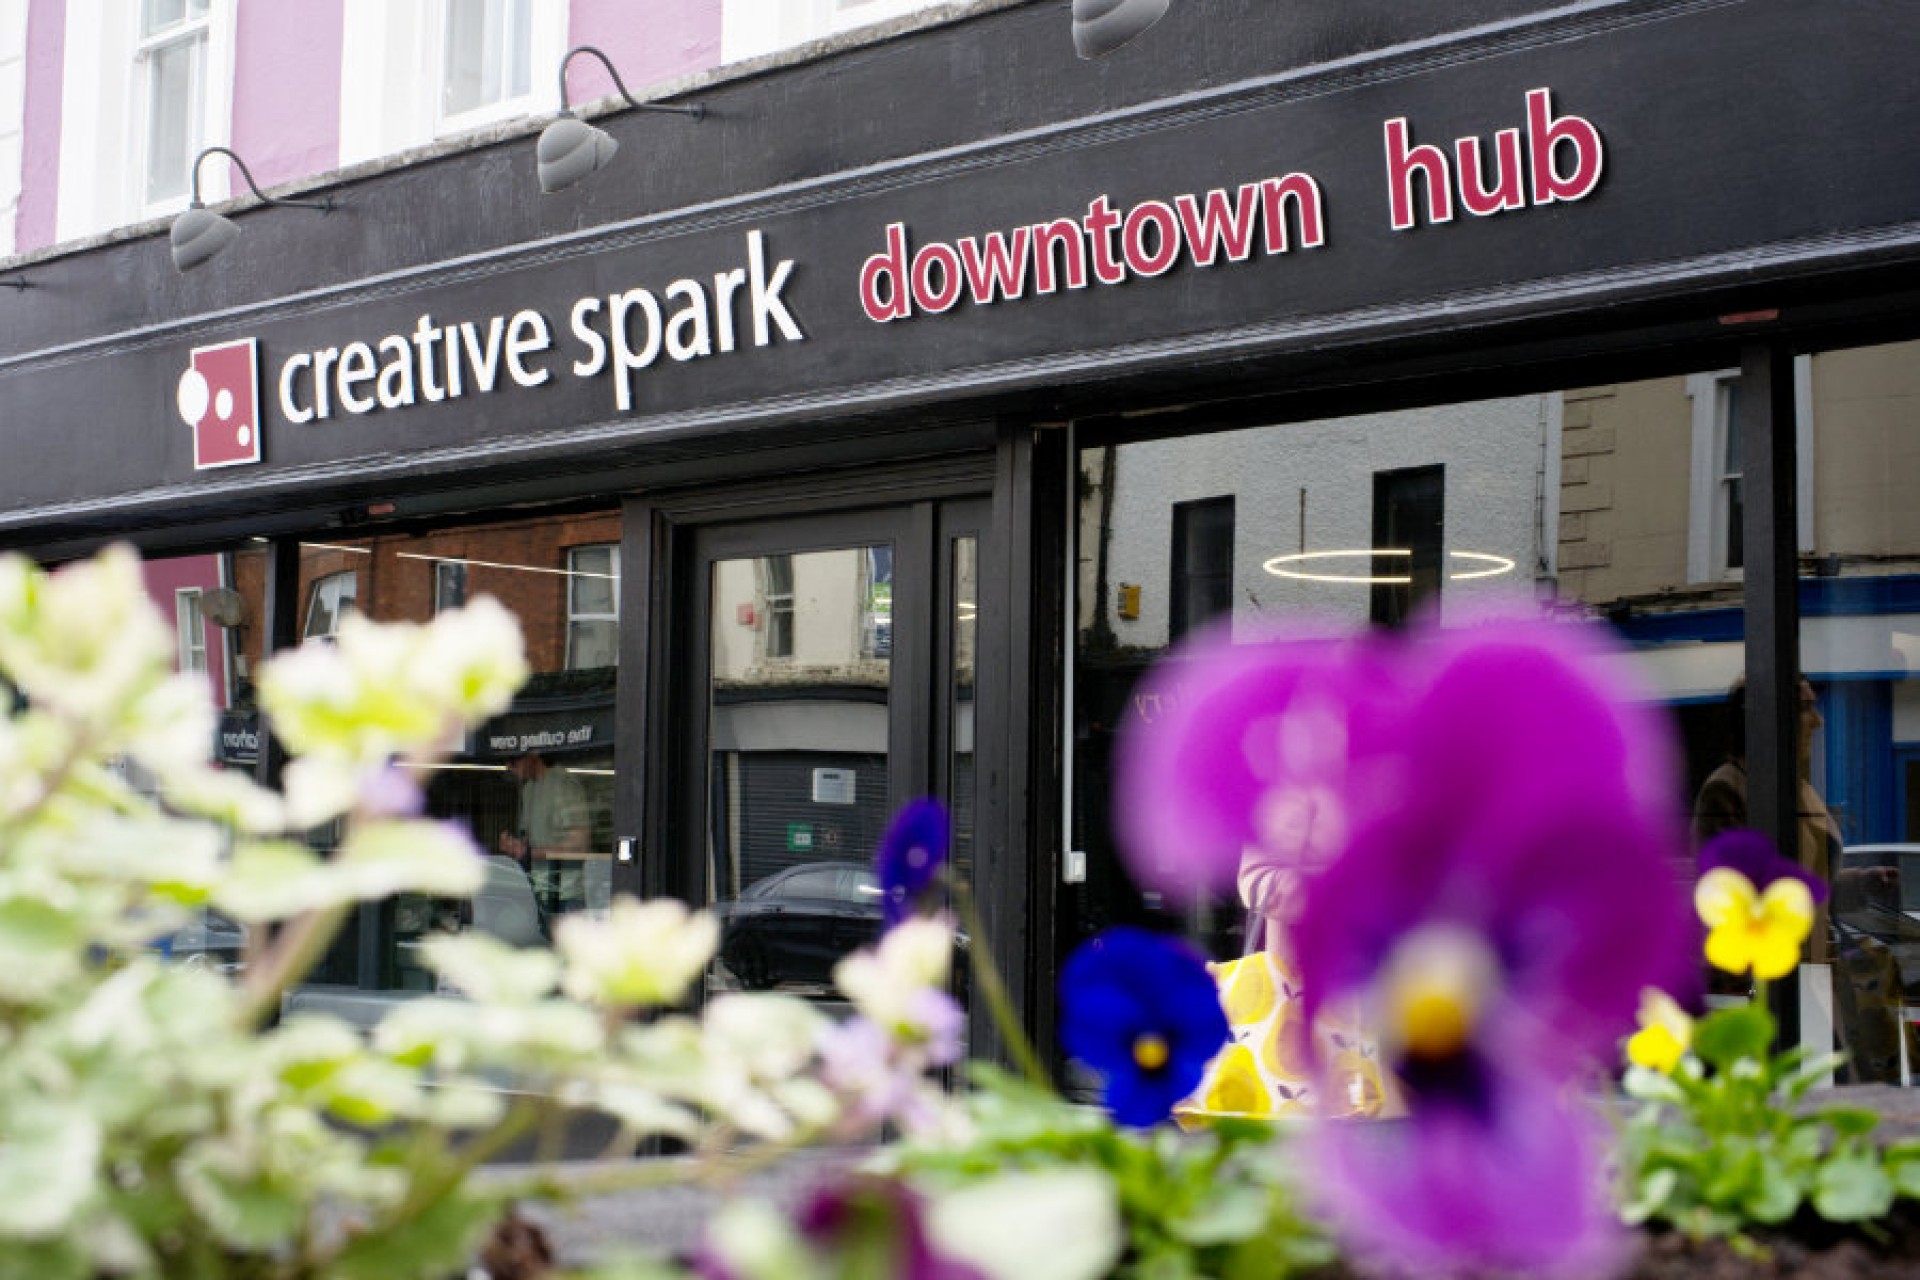 Creative Spark Downtown Hub